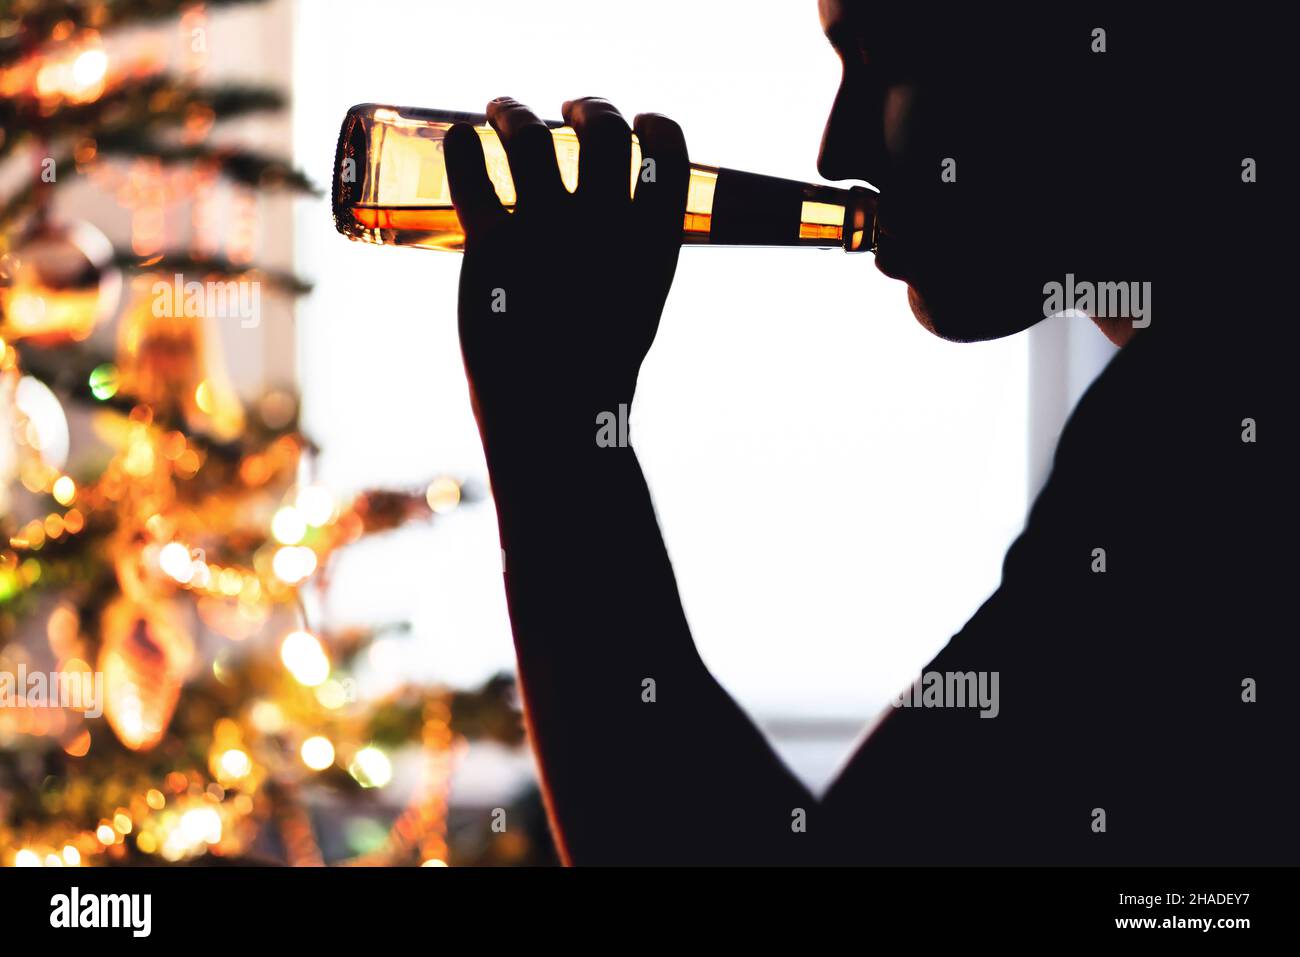 Weihnachts- und Alkoholproblem. Einsamer Mann, der Bier trinkt. Weihnachtsbaum. Alkoholismus allein während des Urlaubs. Trinken Sie aus einer Flasche Bier. Trauriger Typ mit Depressionen. Stockfoto